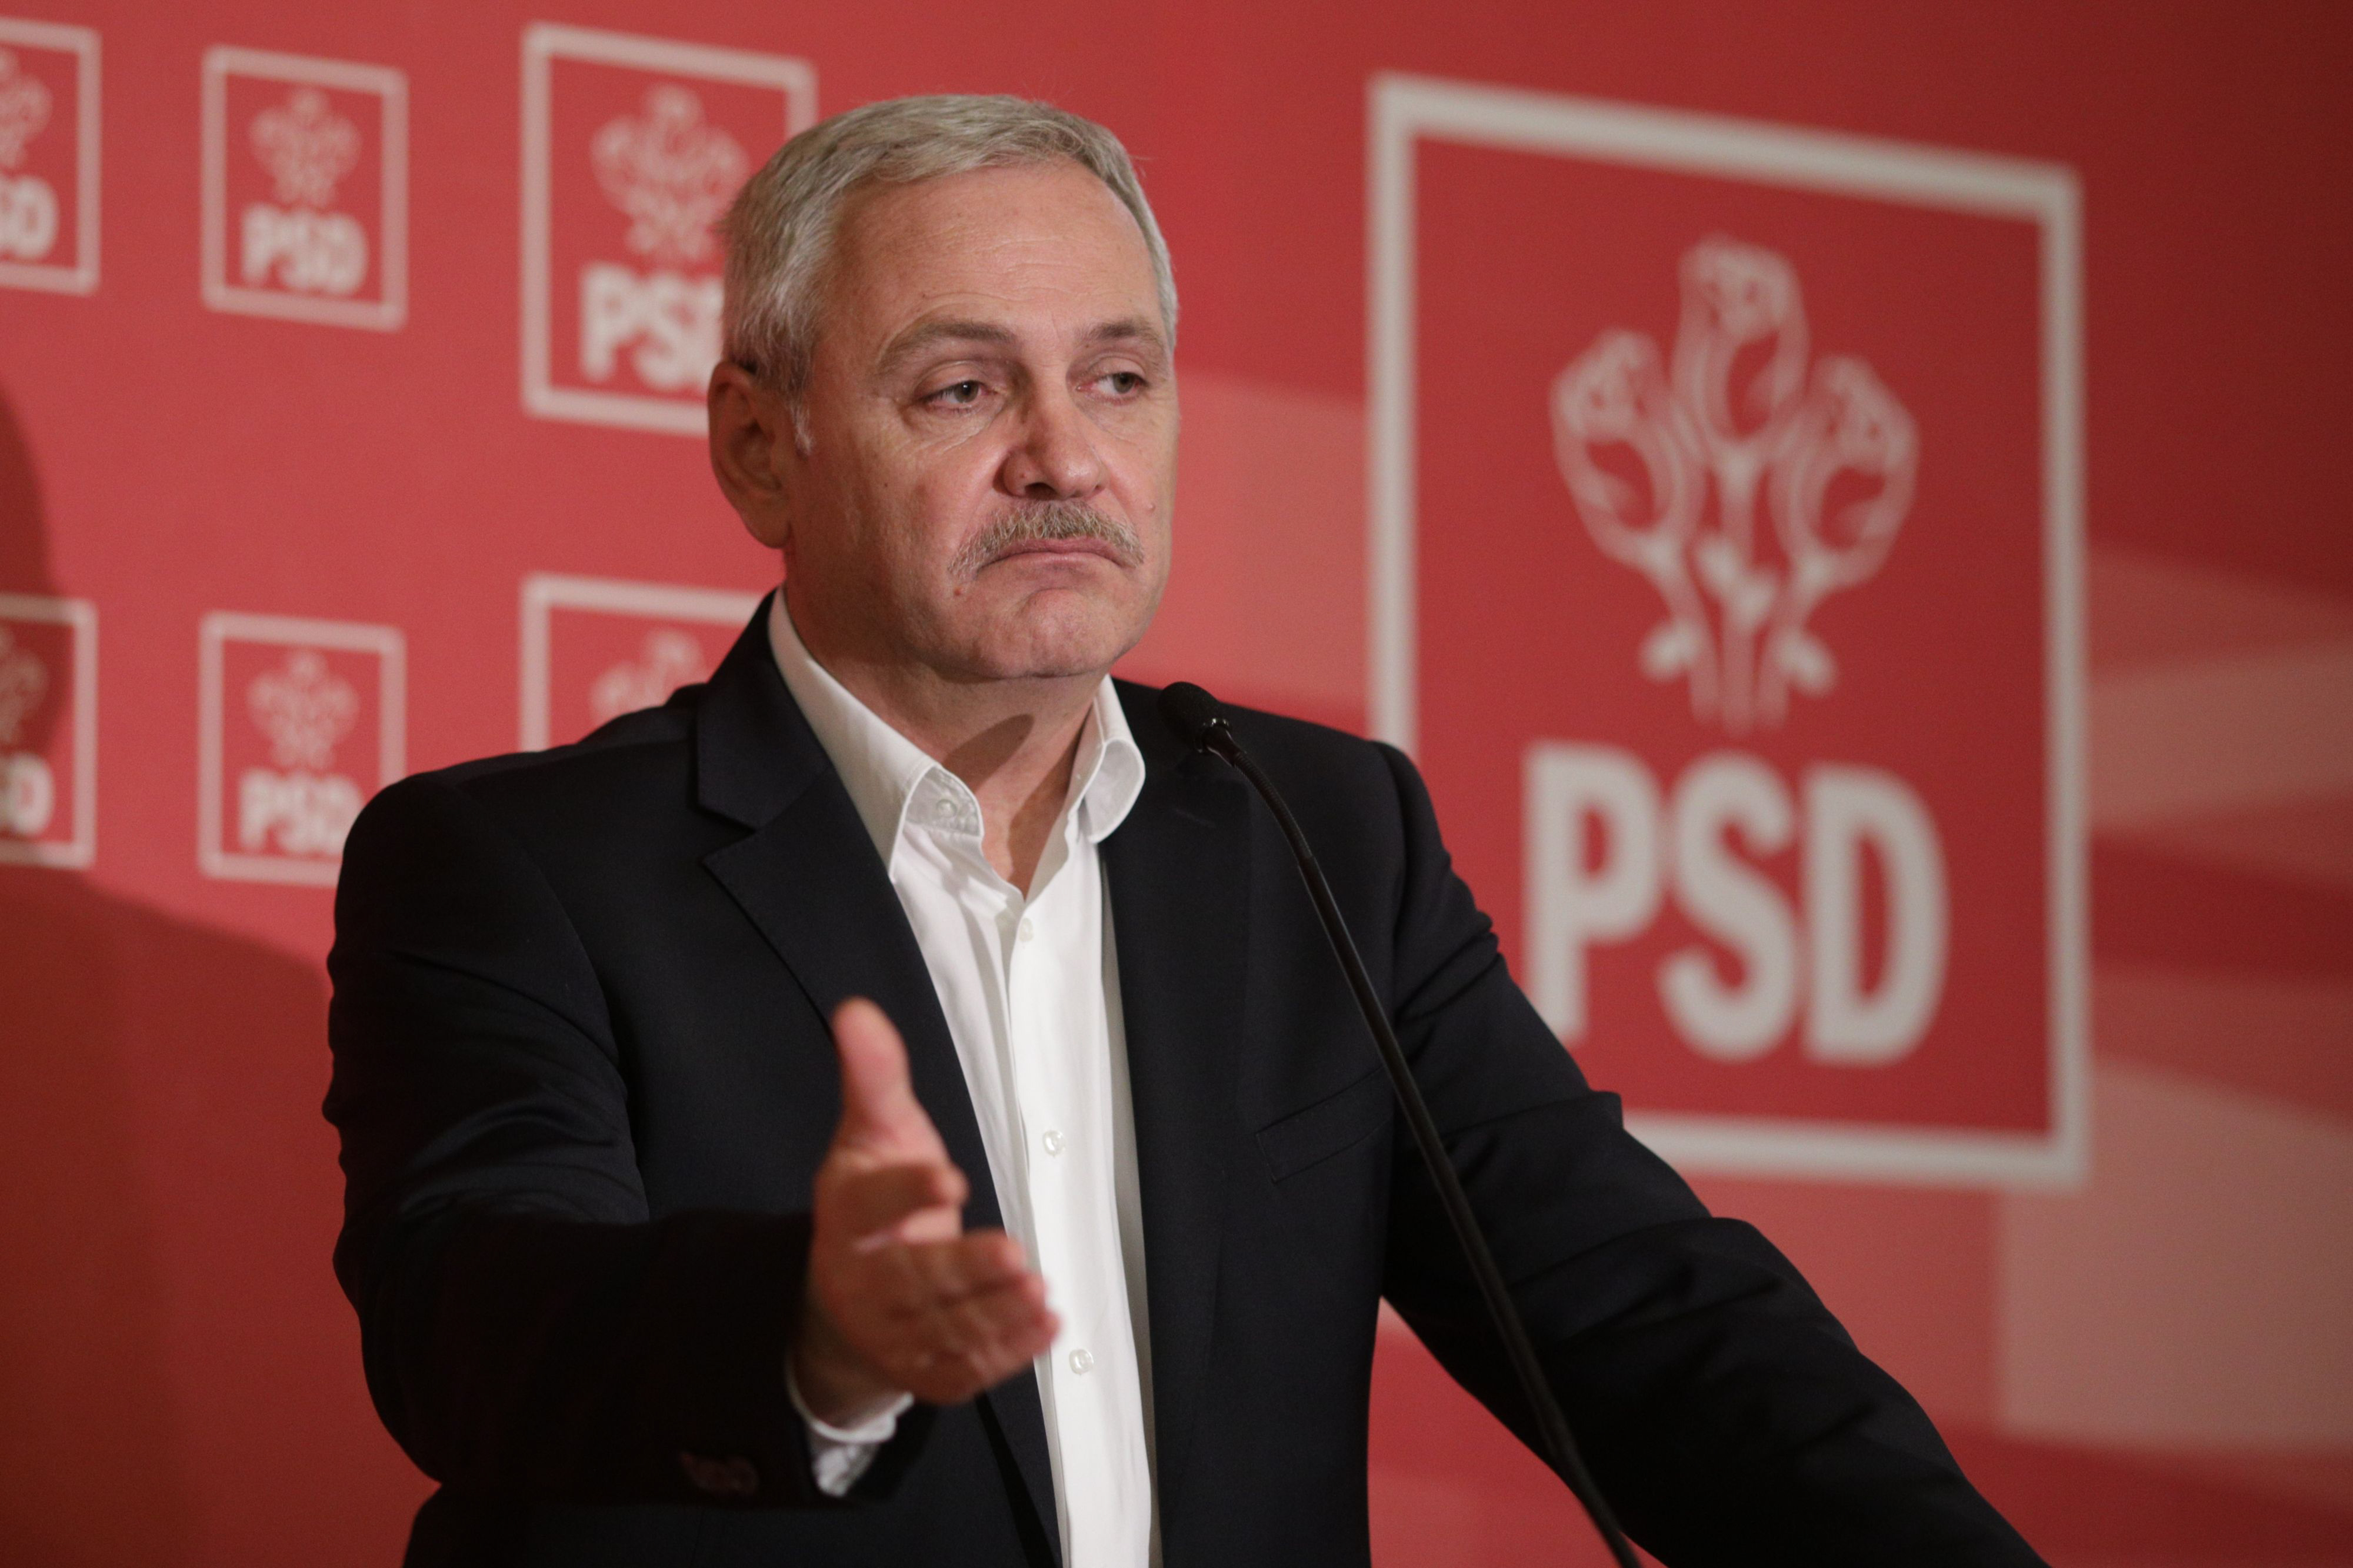 Un fost premier PSD îl atacă pe Liviu Dragnea: ”Paria Europei”